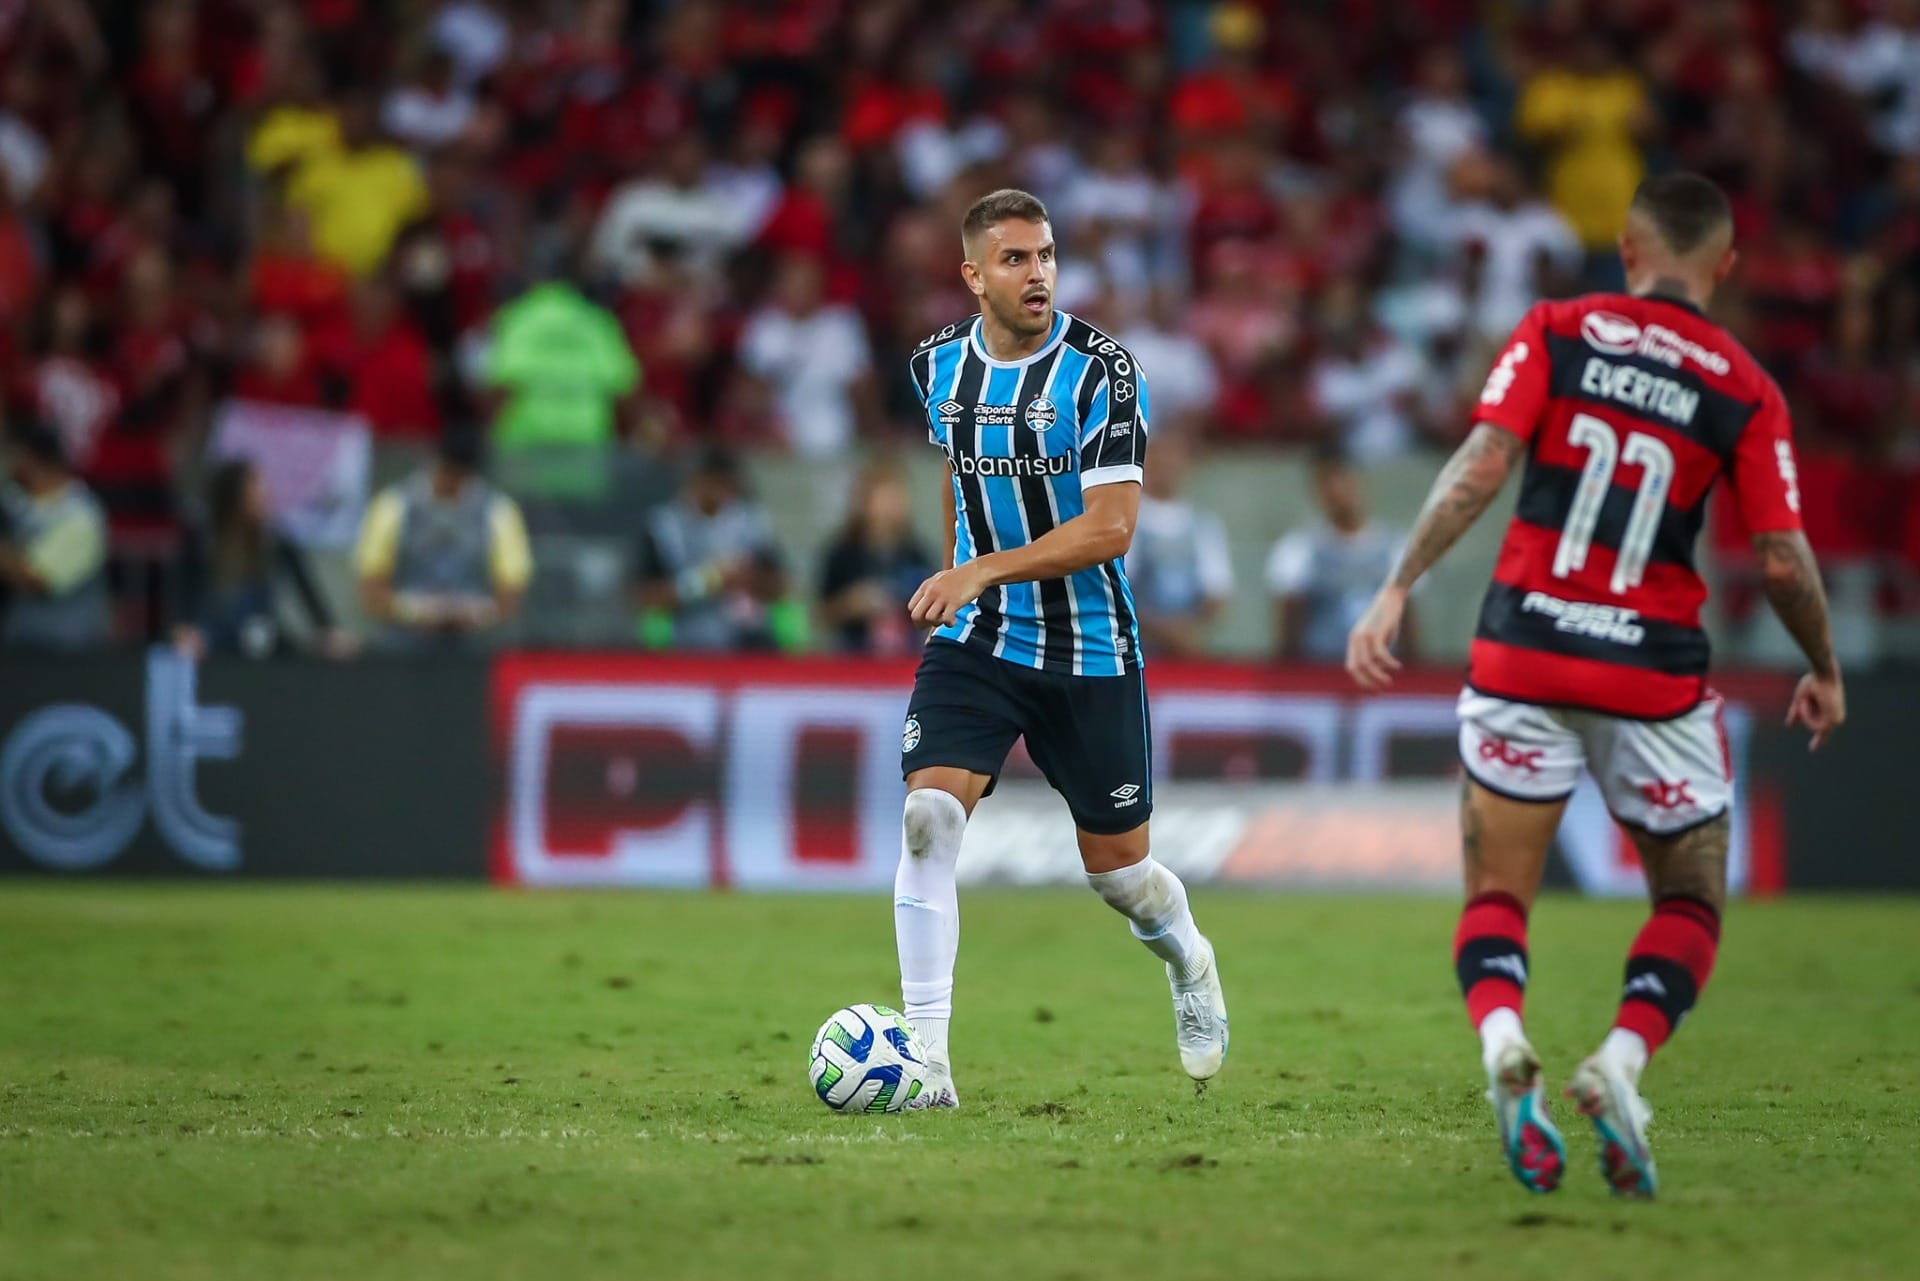 Grêmio x São Luiz: como assistir AO VIVO, online e de graça ao